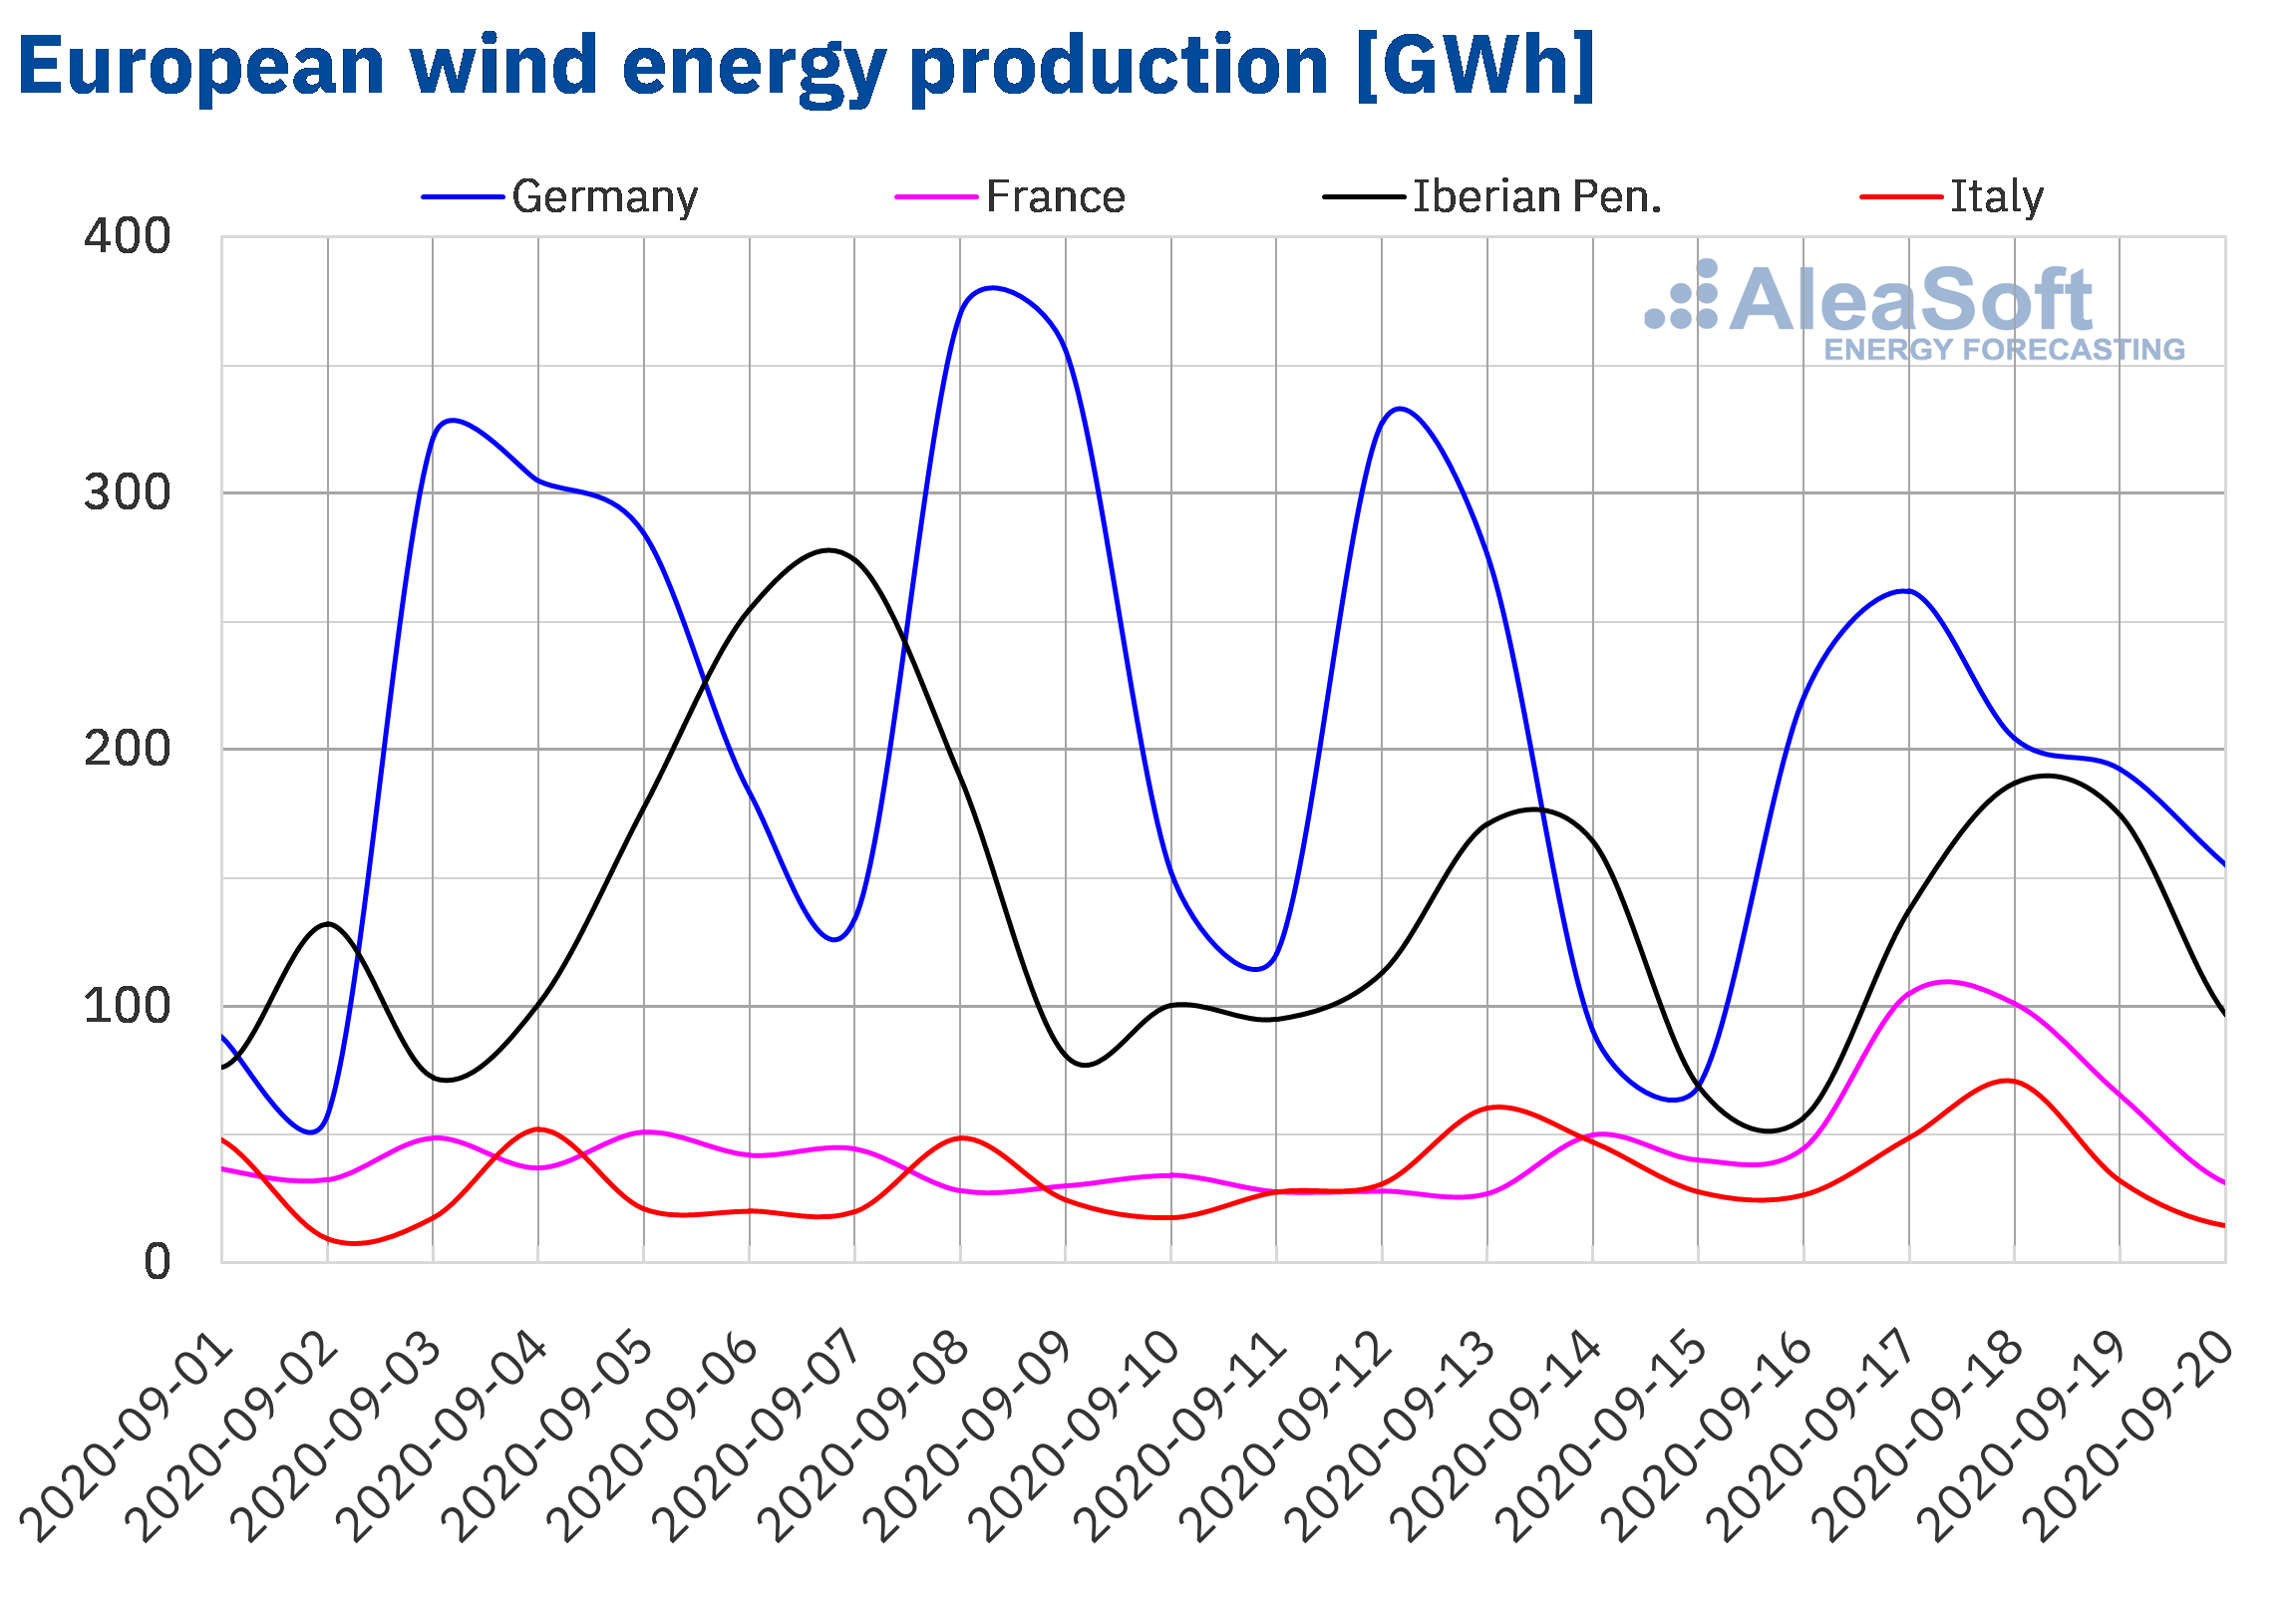 AleaSoft - Wind energy production of Europe